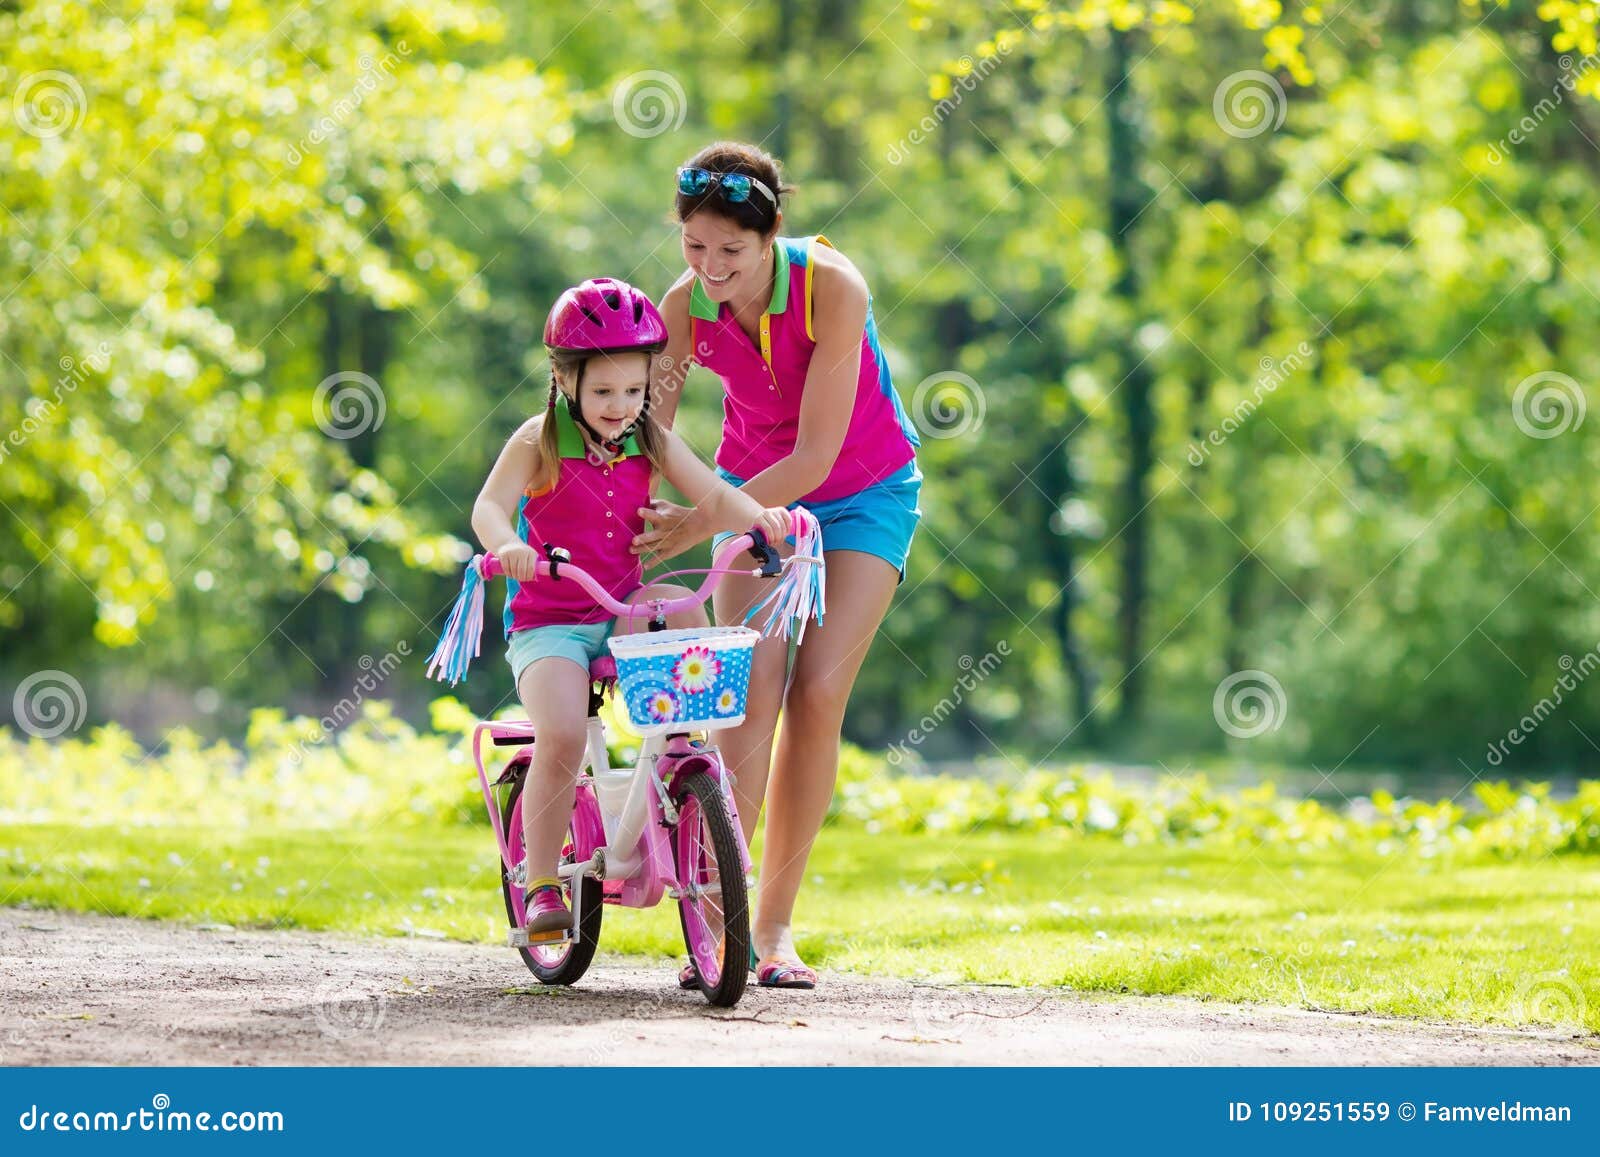 慕尼黑街头妈妈骑自行车带儿童车图片素材-编号14915904-图行天下